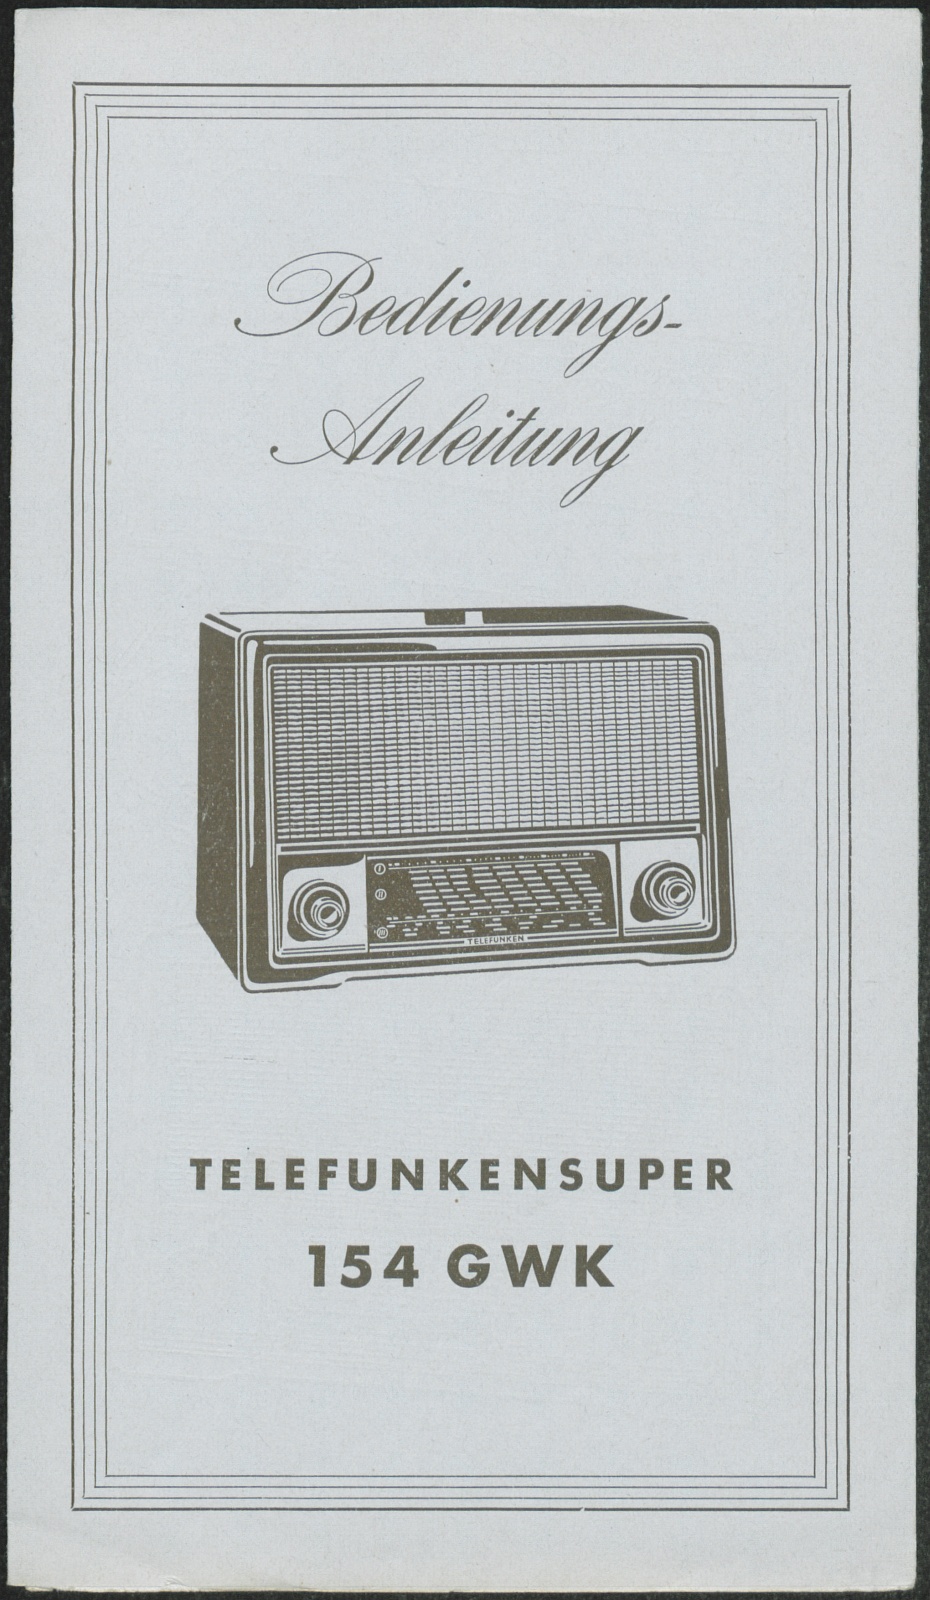 Bedienungsanleitung: Bedienungsanleitung Telefunkensuper 154 GWK (Stiftung Deutsches Technikmuseum Berlin CC0)